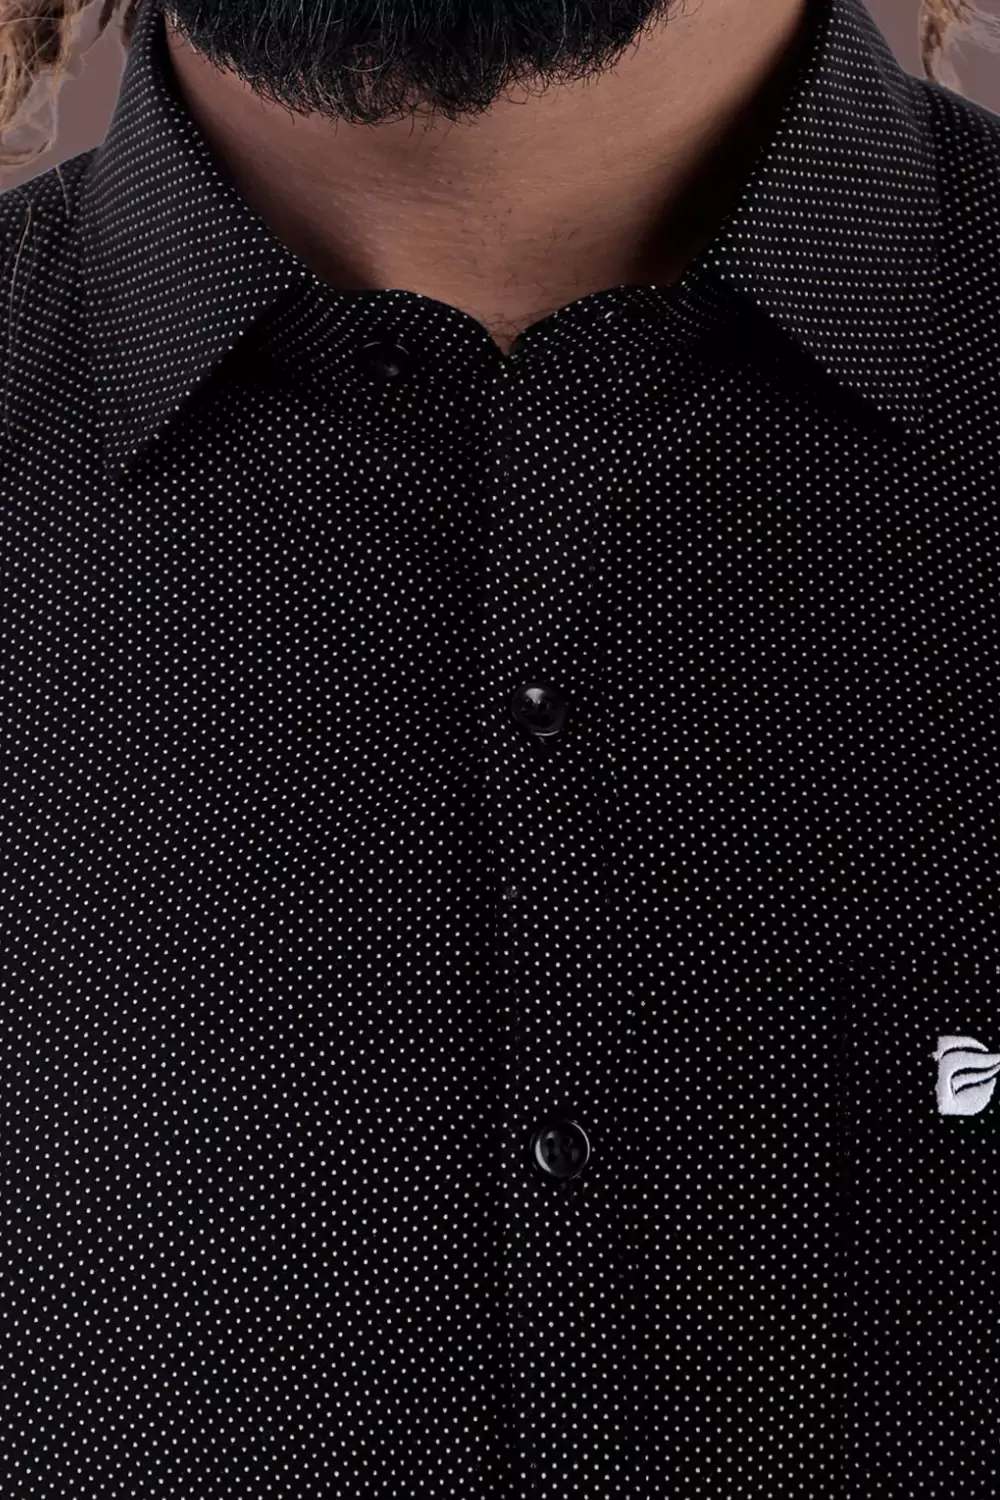 Black Patterned Formal Shirt